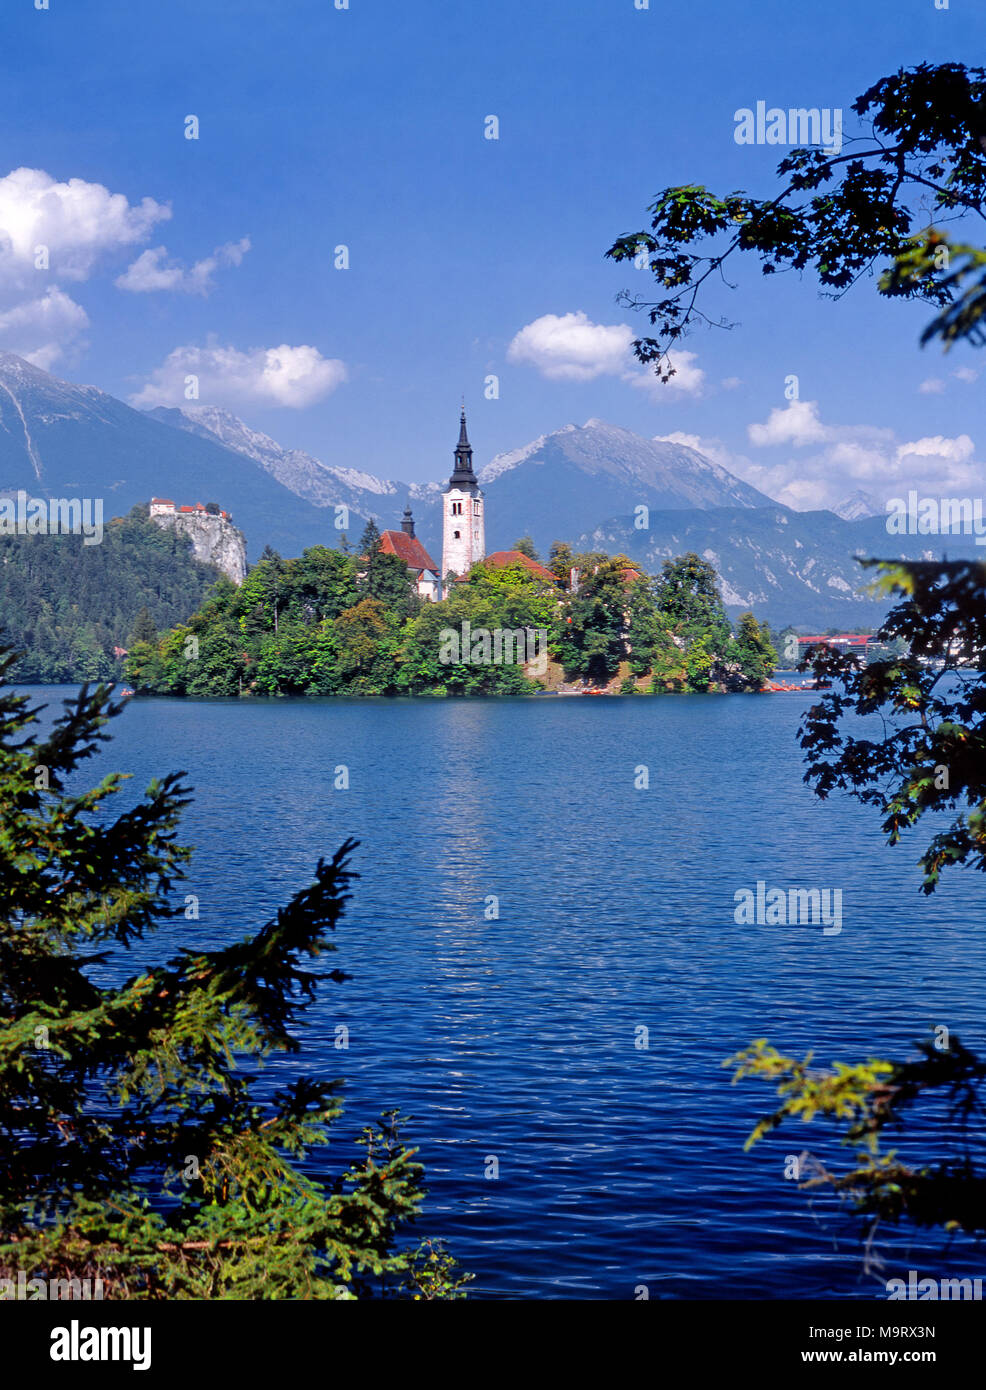 Le lac de Bled, en Slovénie. L'île de Bled (Blejski Otok) Église de l'île de l'assomption de Marie (Cerkev Marijinega vnebovzetja) et le château de Bled Banque D'Images